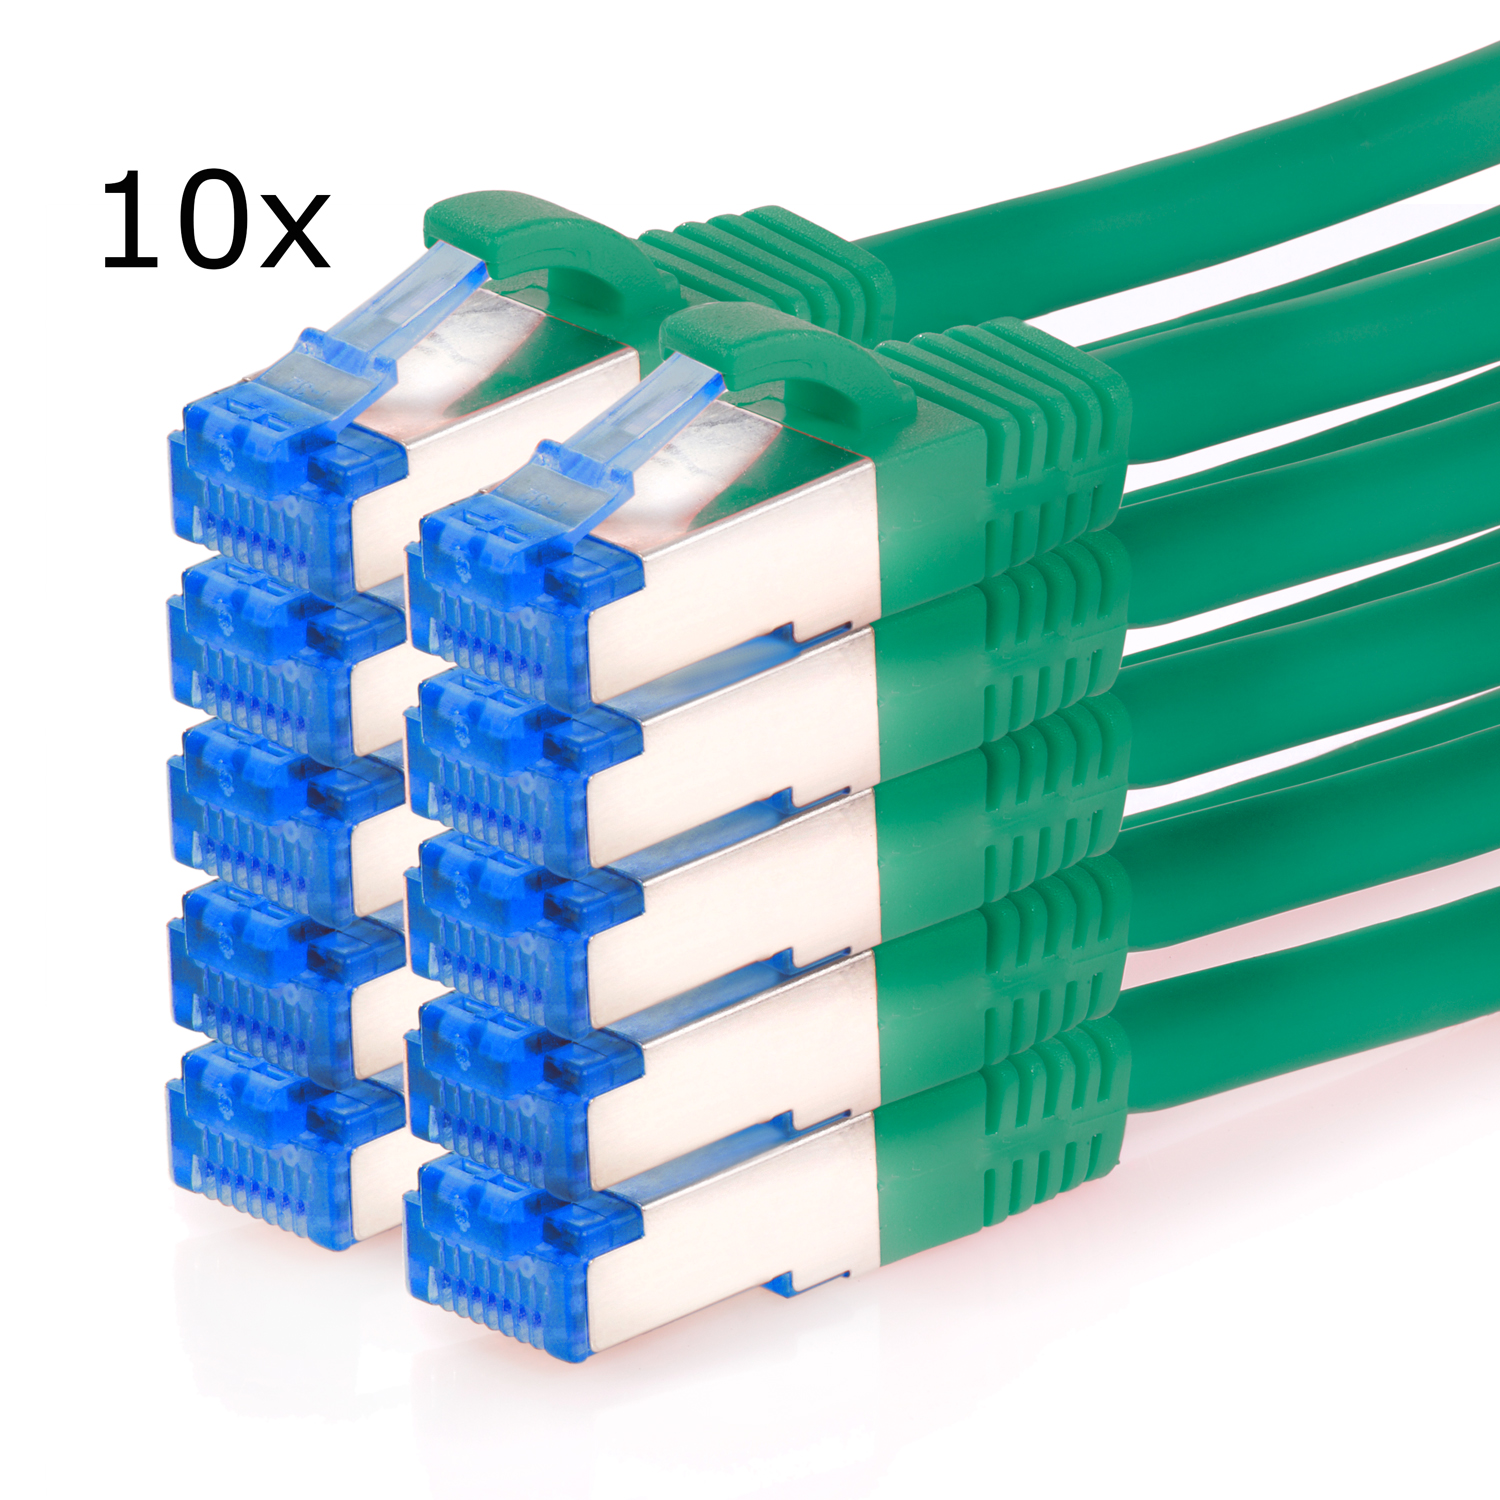 TPFNET 10er Pack 0,25m S/FTP 10GBit, / Patchkabel 0,25 Netzwerkkabel m Netzwerkkabel, grün